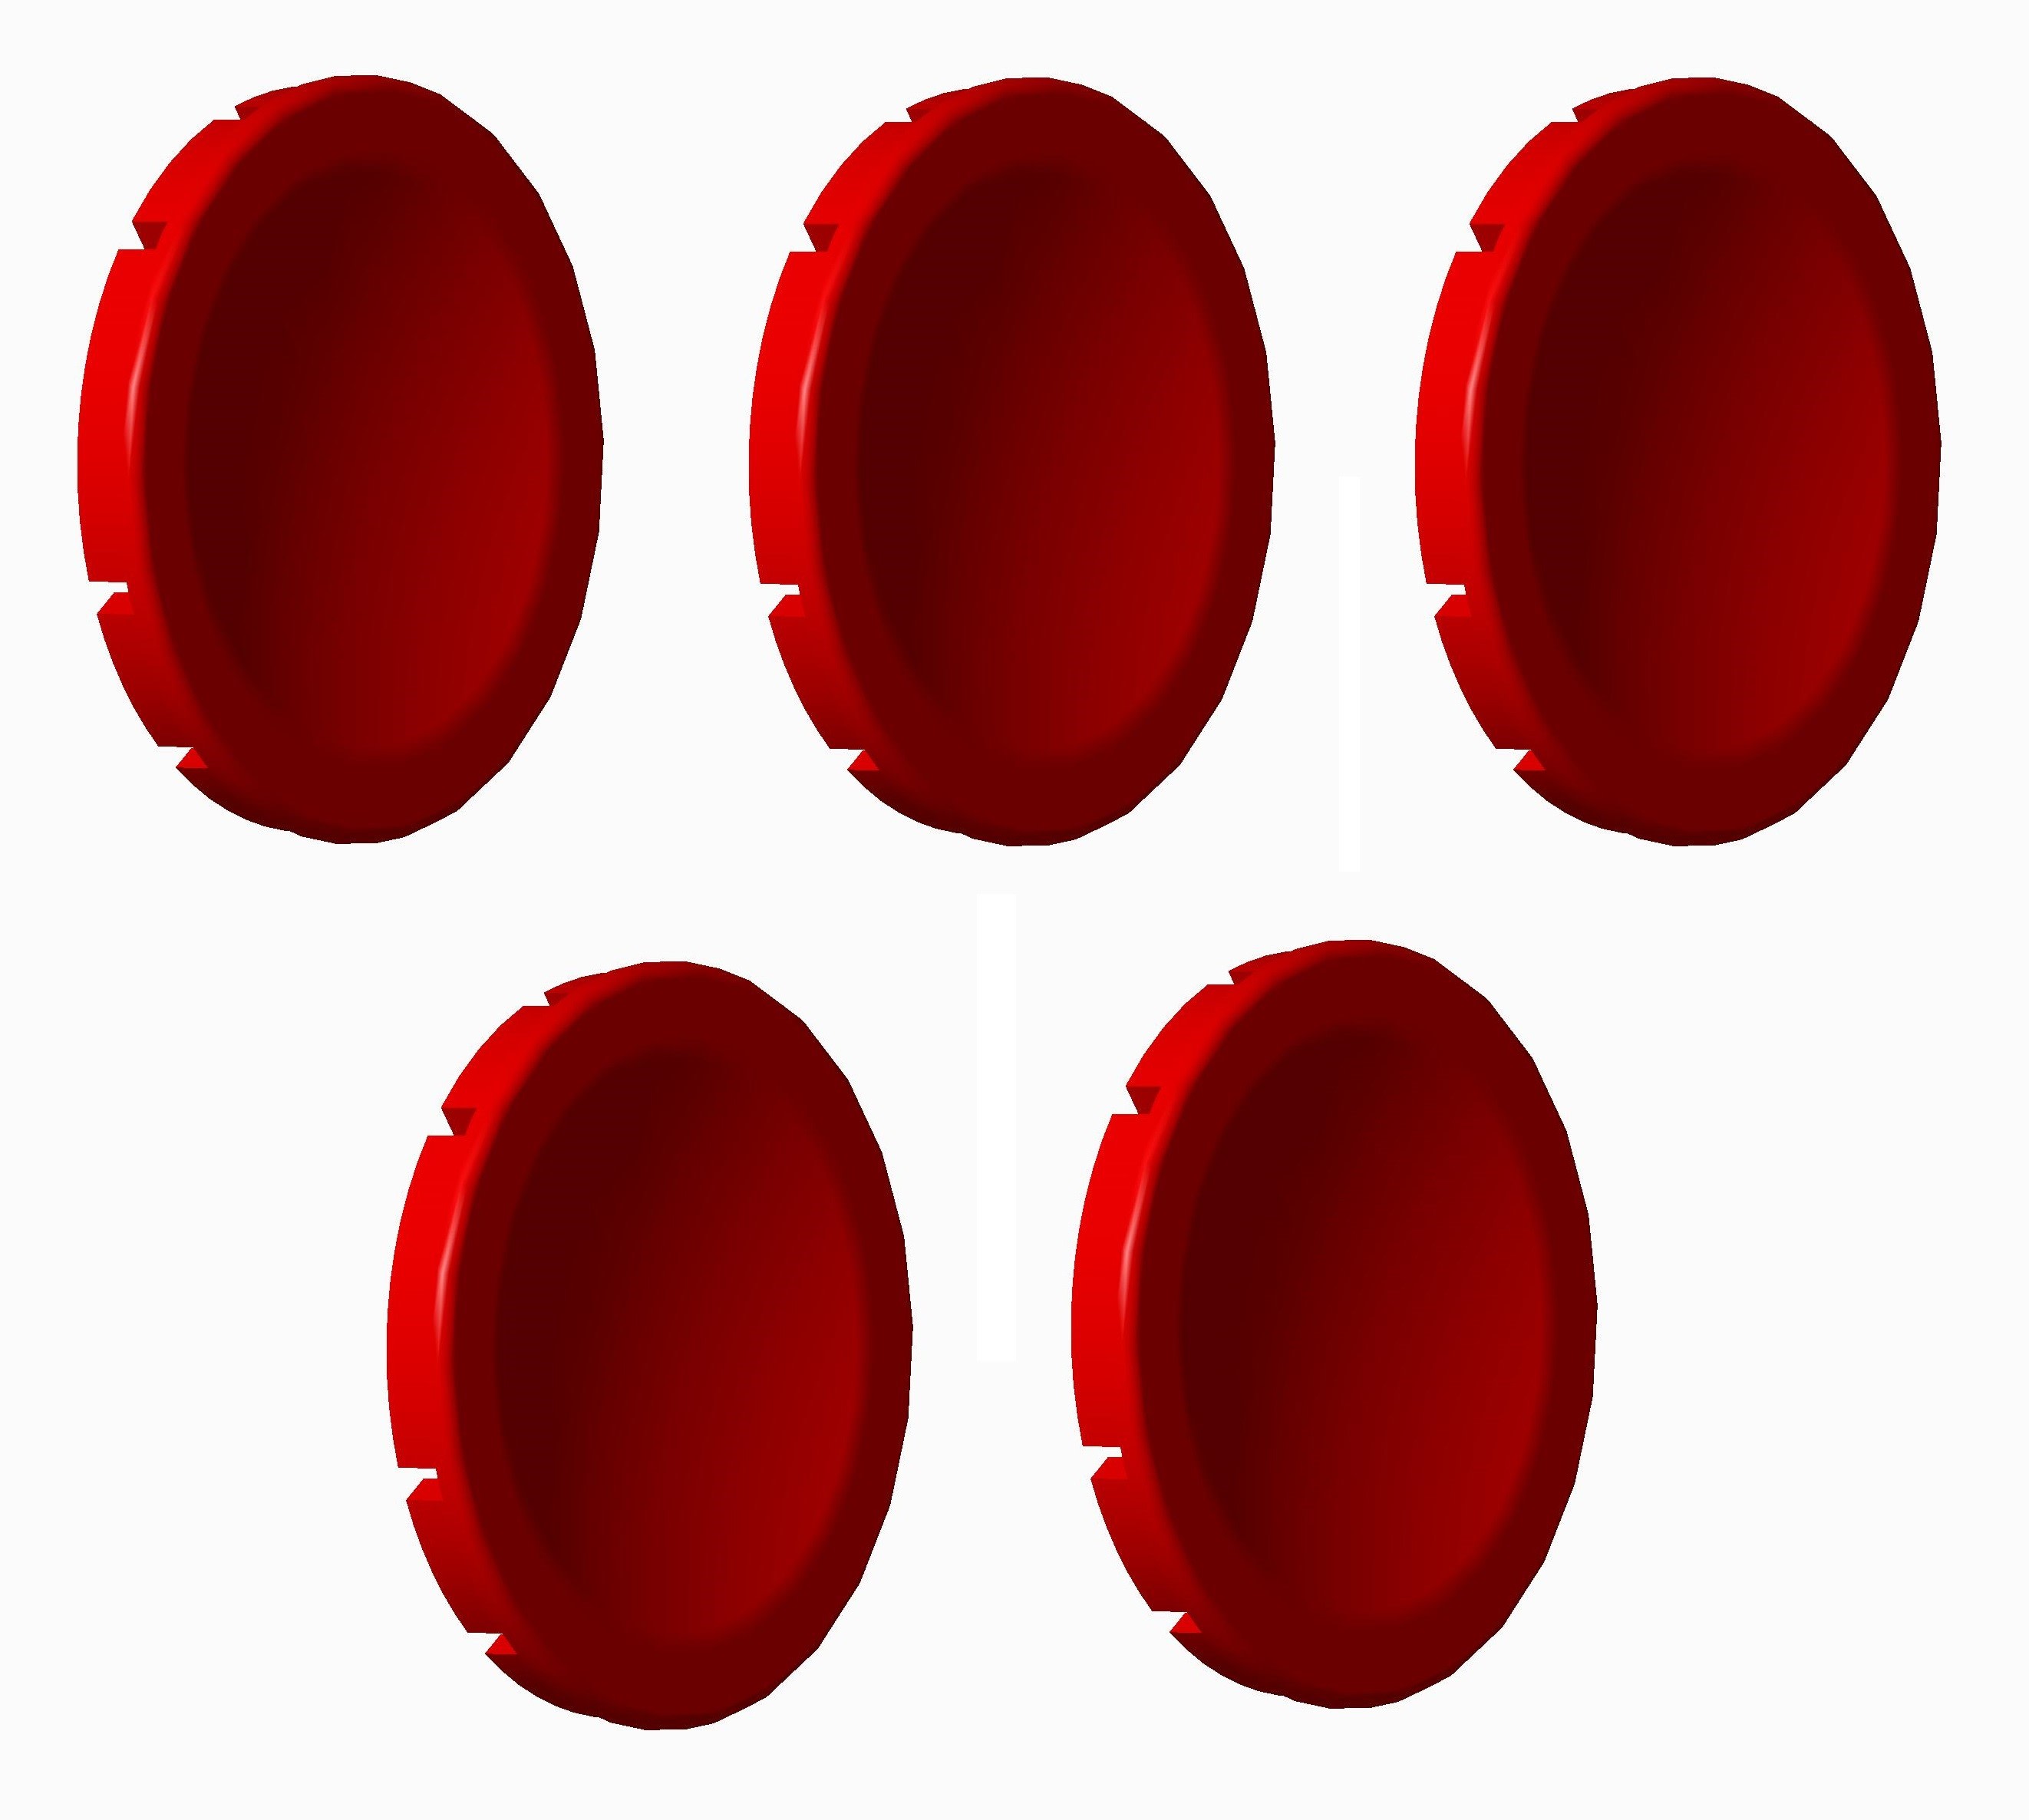 Atx - Unicode 2 - Lot de 5 pastilles rouges